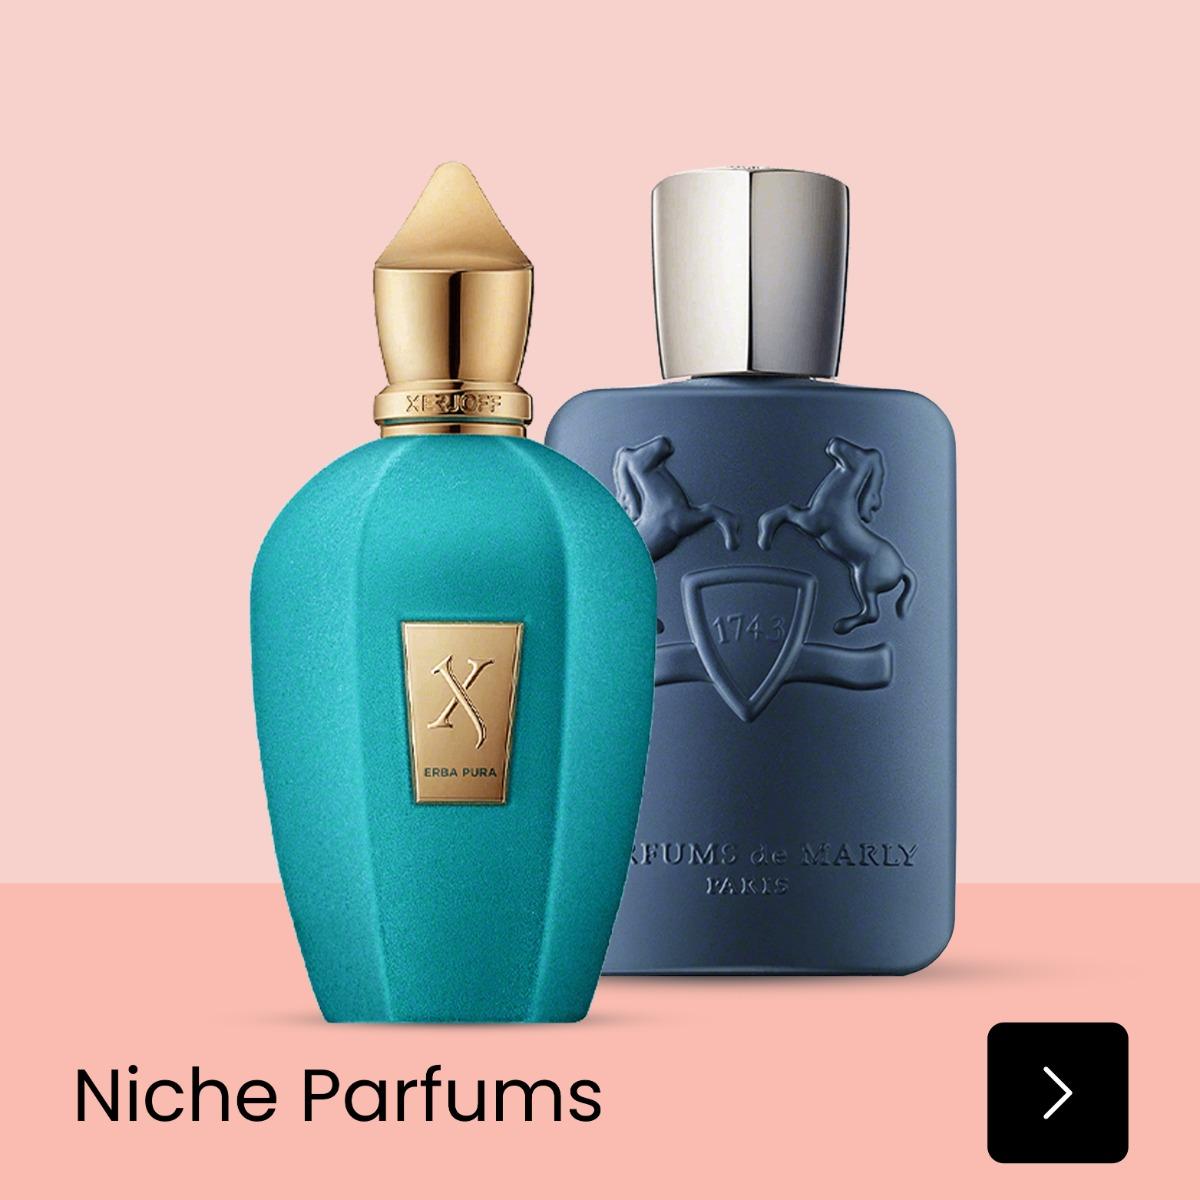 Niche parfums